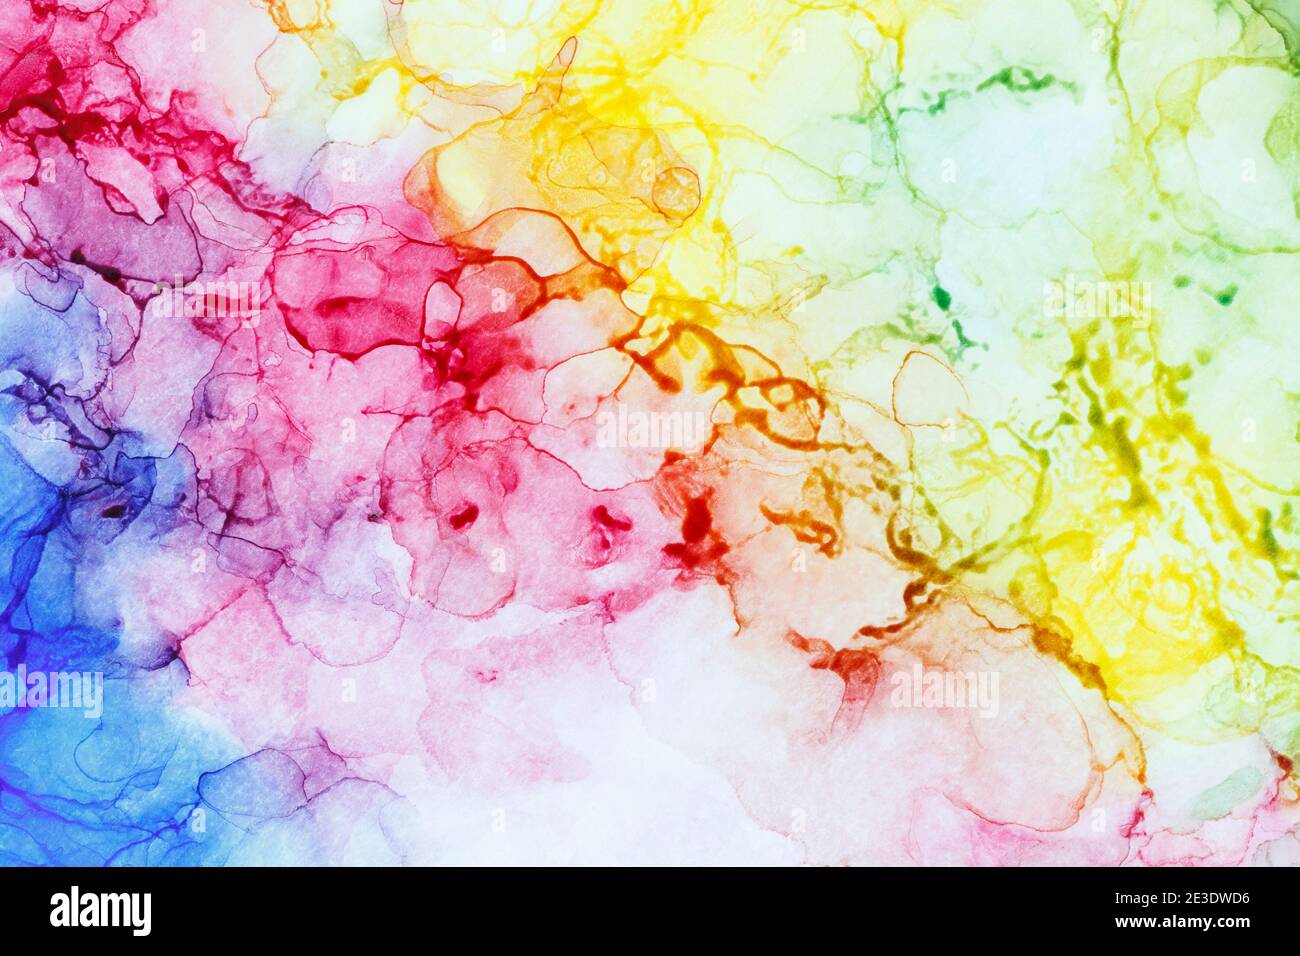 Nahaufnahme der abstrakten regenbogenfarbenen Alkoholtinte auf Weiß. Flüssige Tinte, farbenfrohe Vollformat texturierten Hintergrund. Lebendige Farben. Kunst für Design. Stockfoto